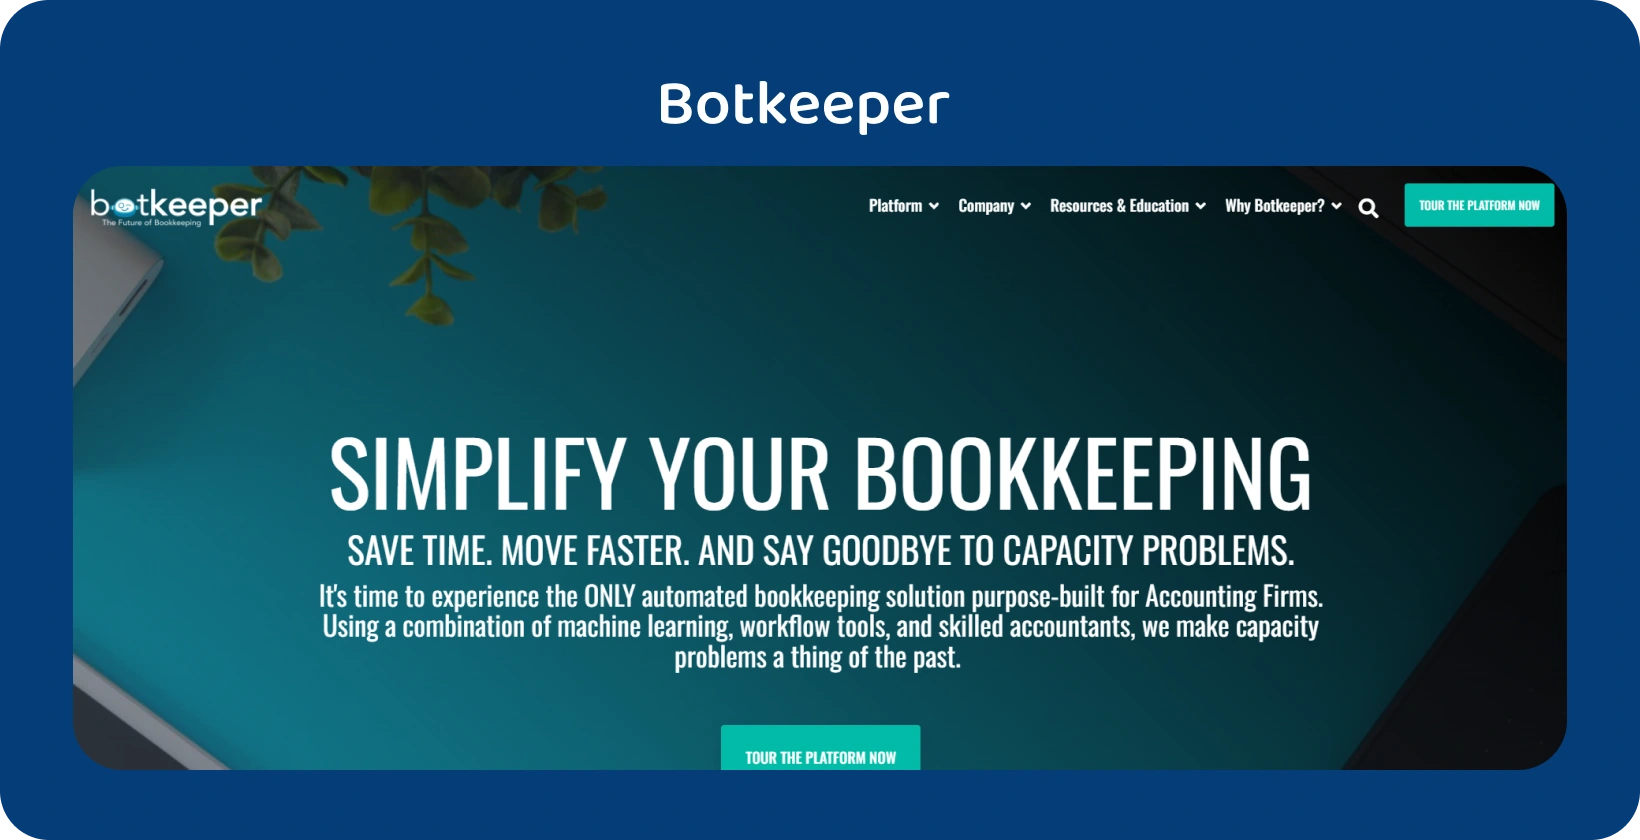 Η αρχική σελίδα του Botkeeper υπογραμμίζει την απλοποίηση της τήρησης λογιστικών βιβλίων για τους λογιστές μέσω της τεχνολογίας αυτοματισμού του.